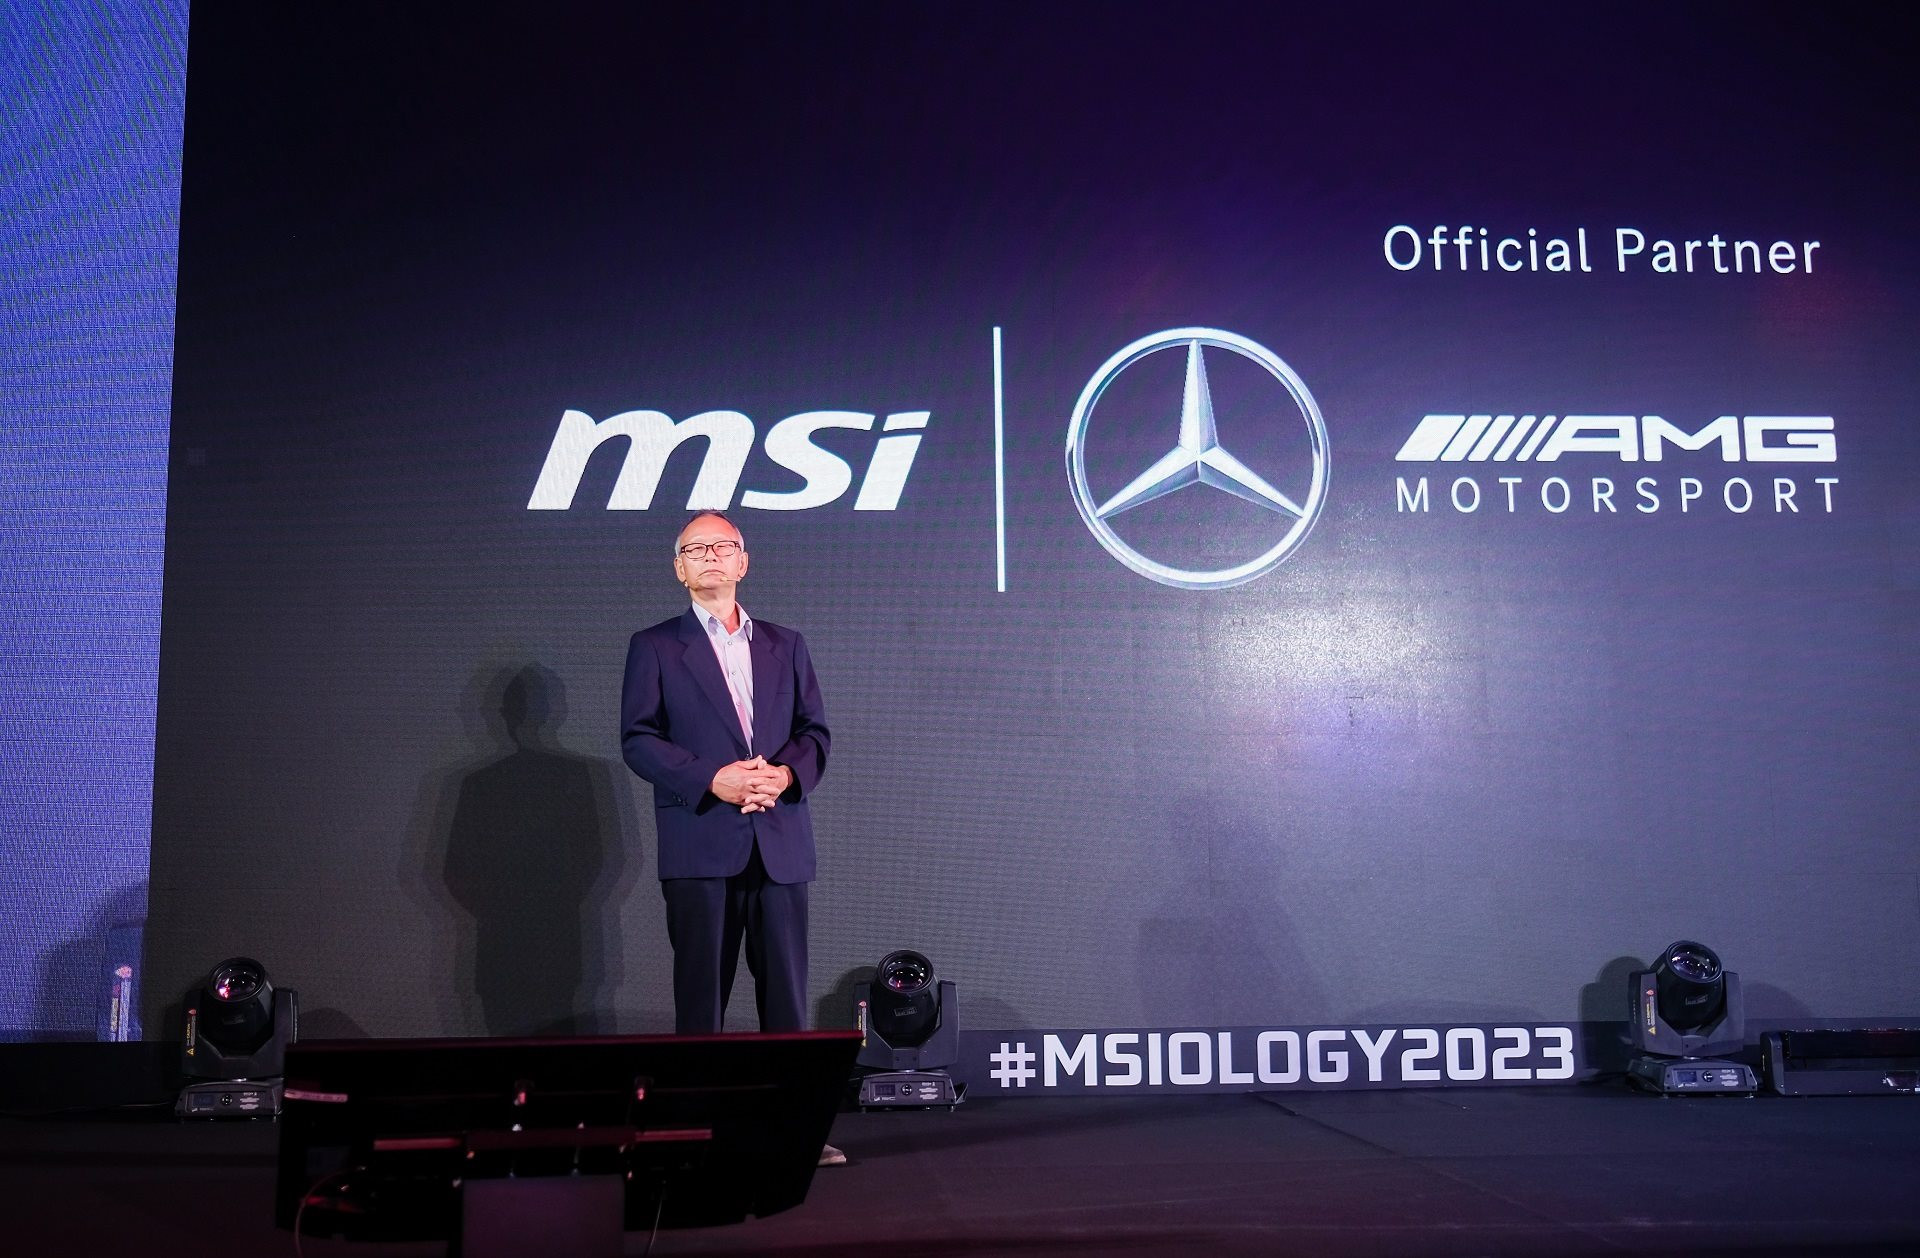 Trải nghiệm laptop của MSI lần đầu hợp tác cùng Mercedes-AMG tại Computex 2023: Xịn và đẹp - Ảnh 1.